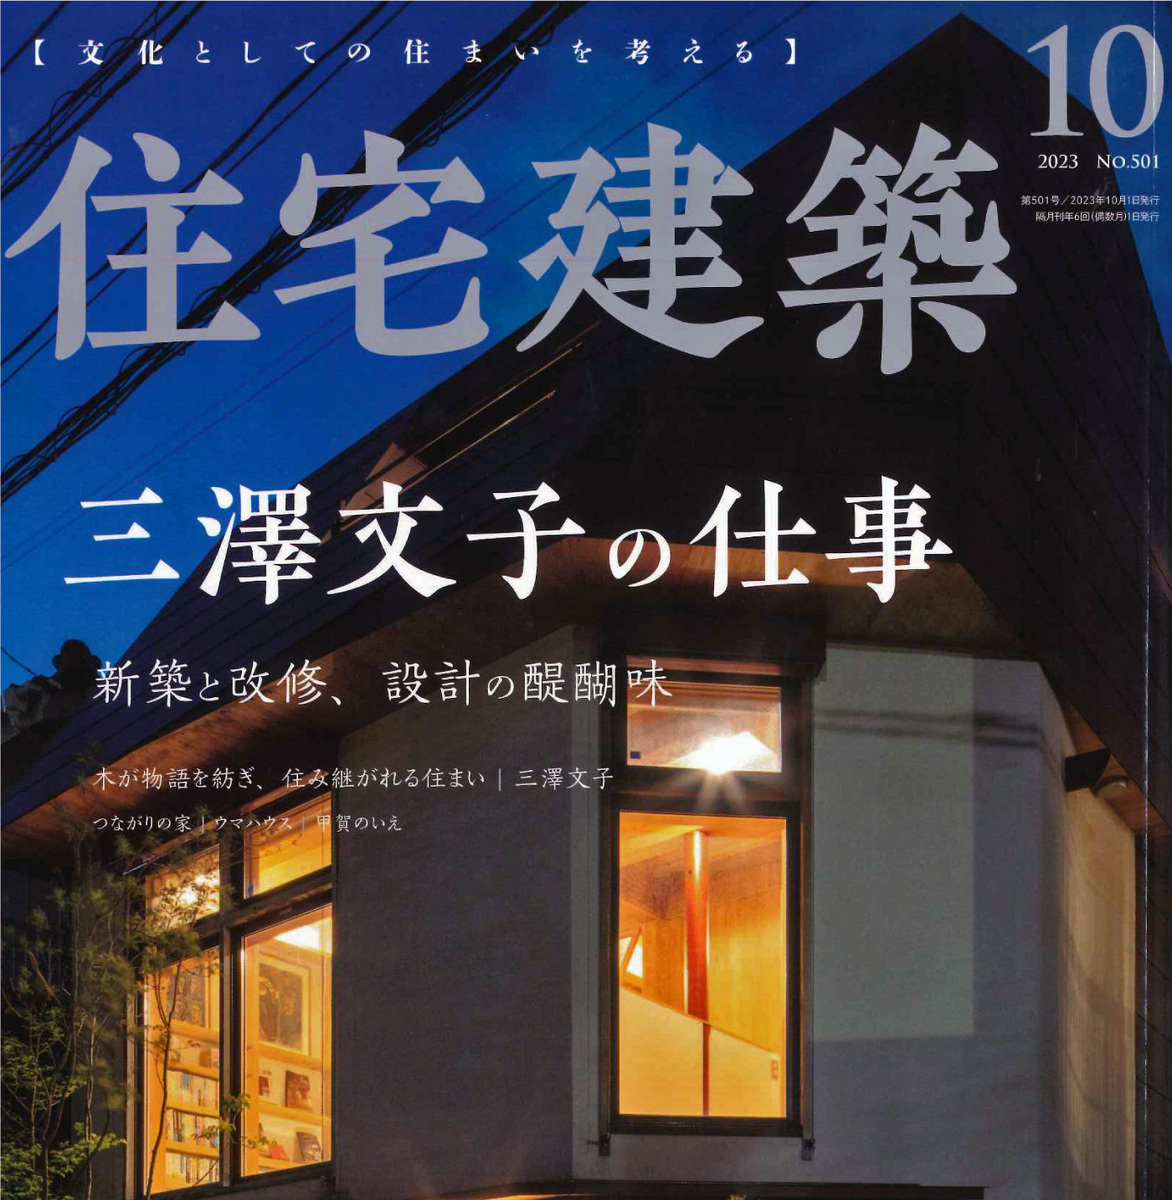 雑誌「住宅建築」にカナメ施工事例が紹介されました。